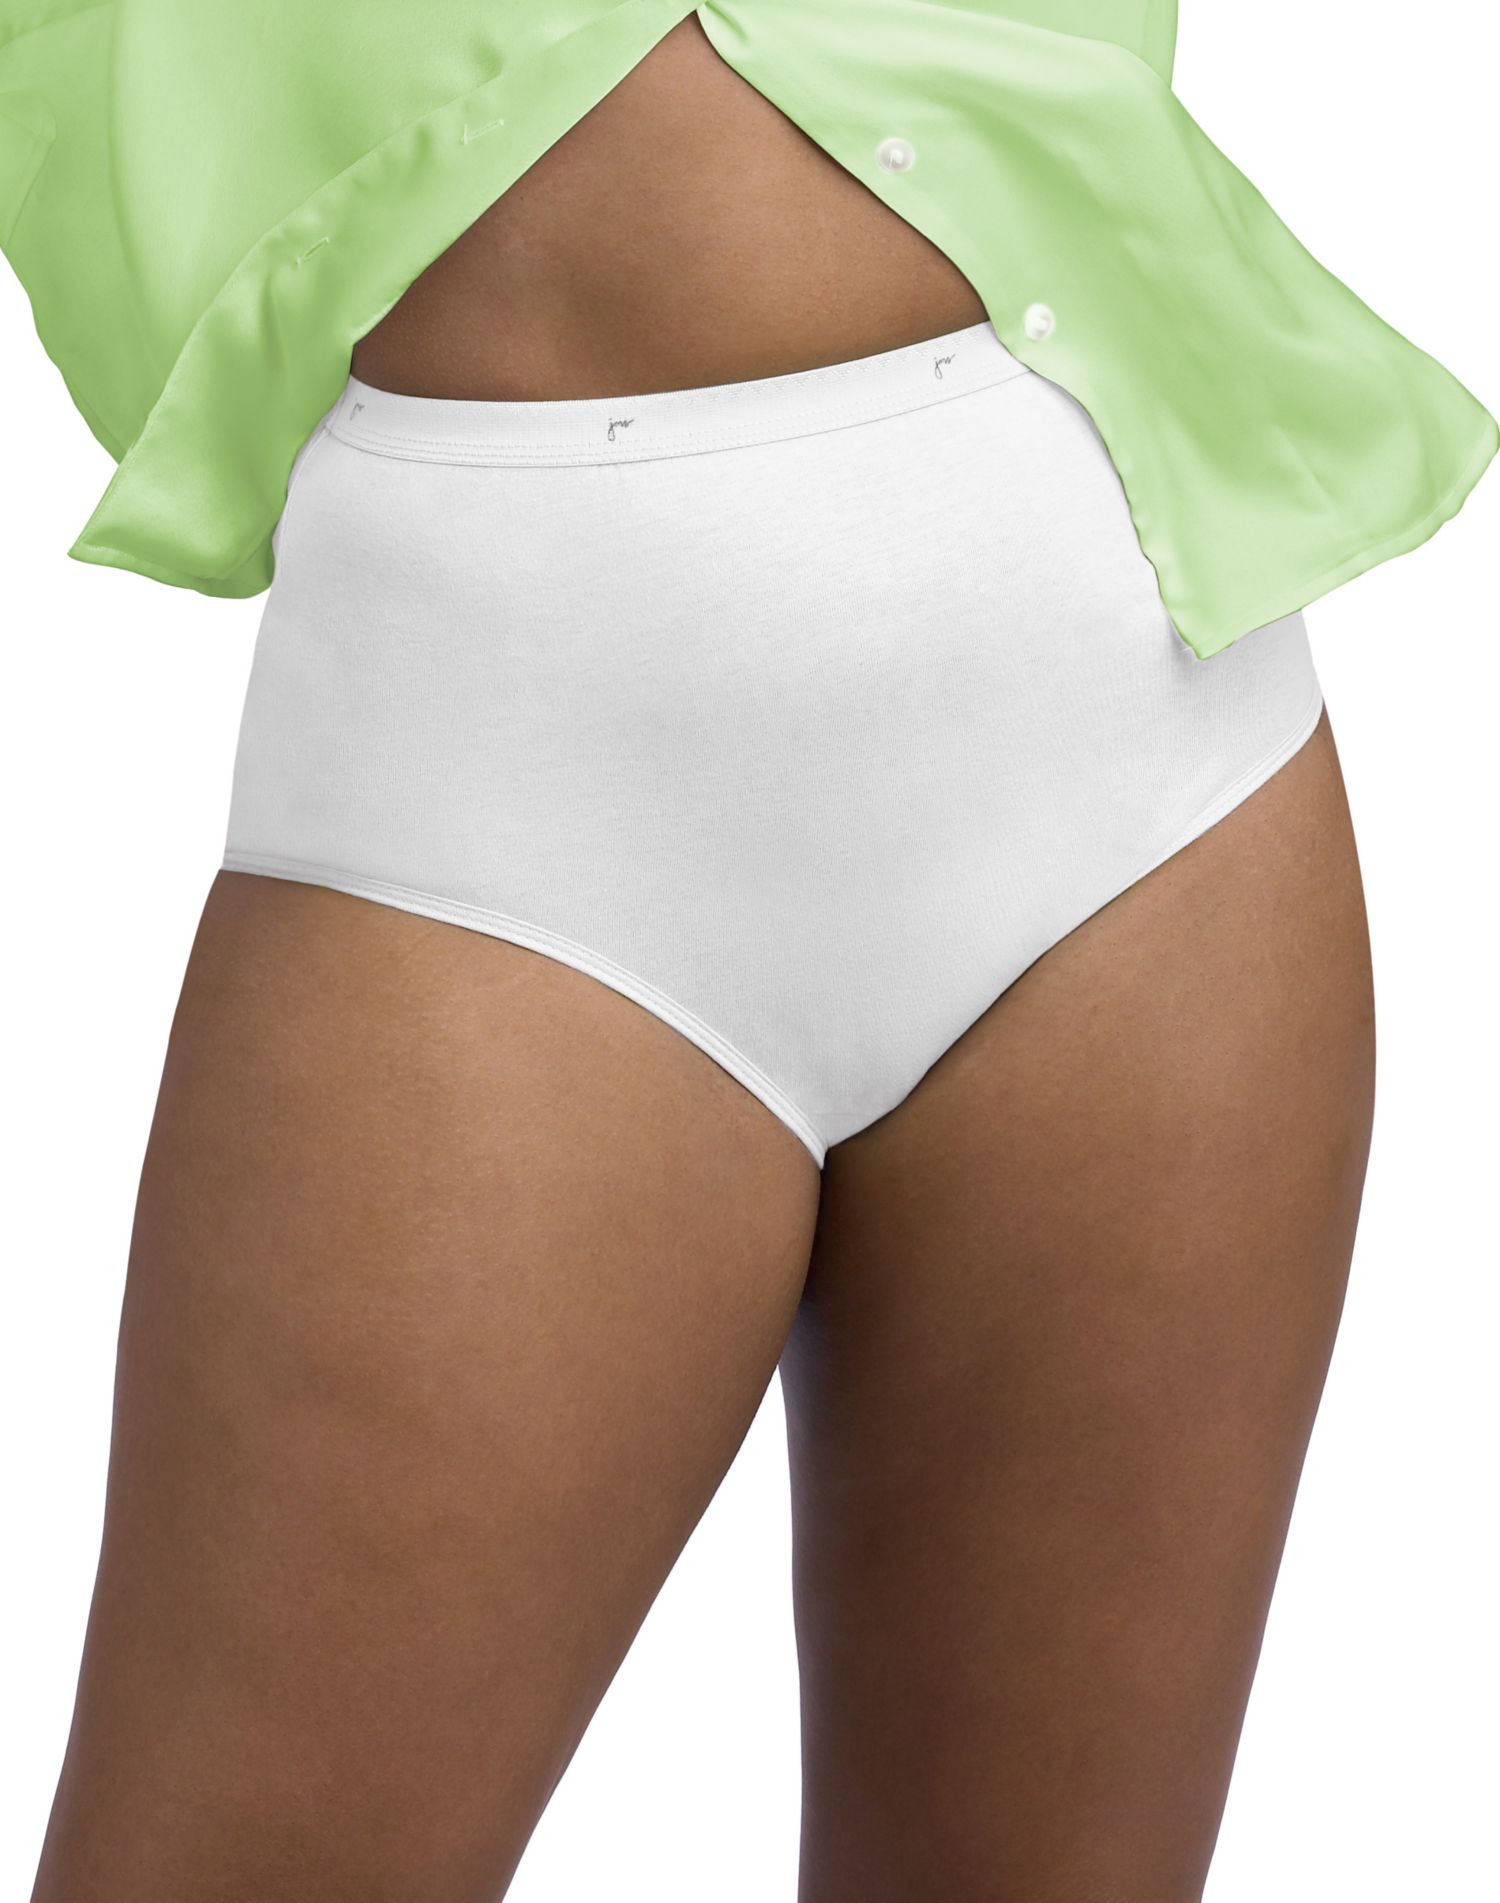 just-my-size-underwear-1610p5-jms-p-5-cotton-briefs-wardrobe